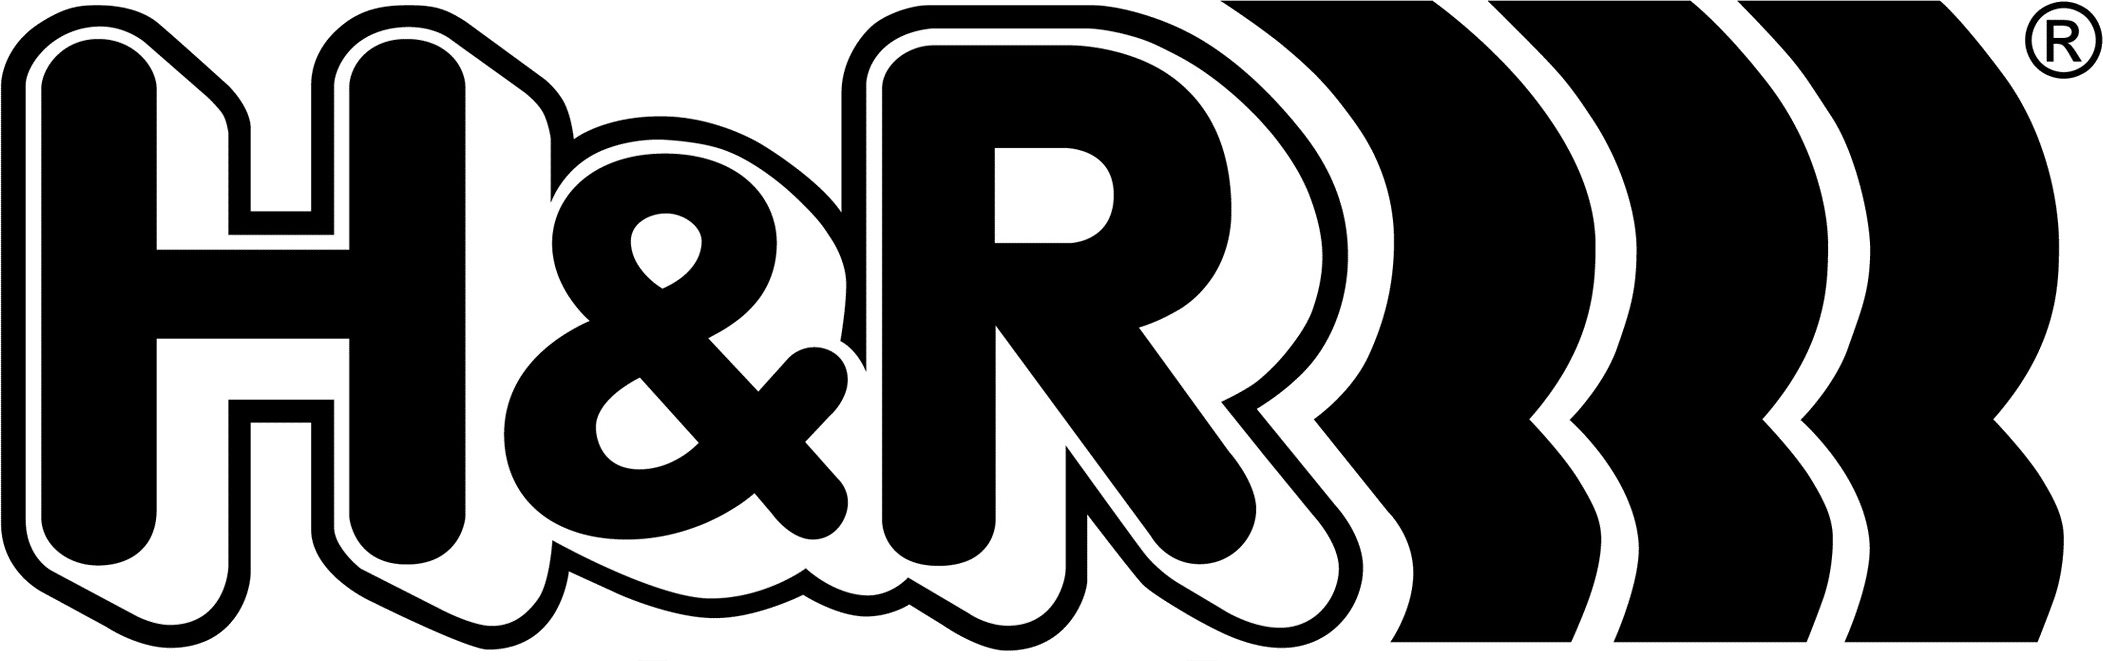 H&R Logo